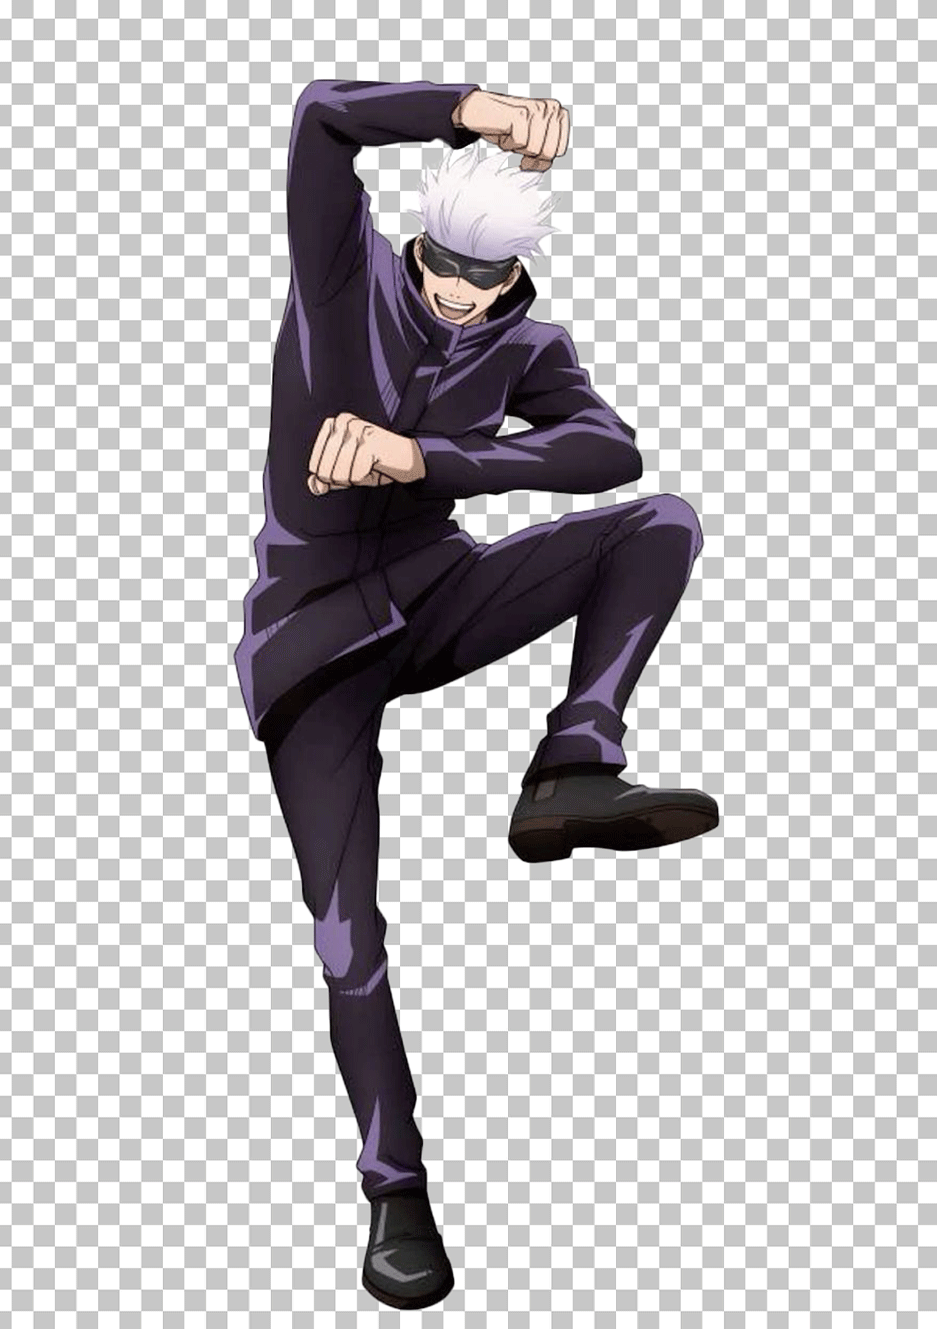 Gojo Satoru dancing in purple pants and black jacket.